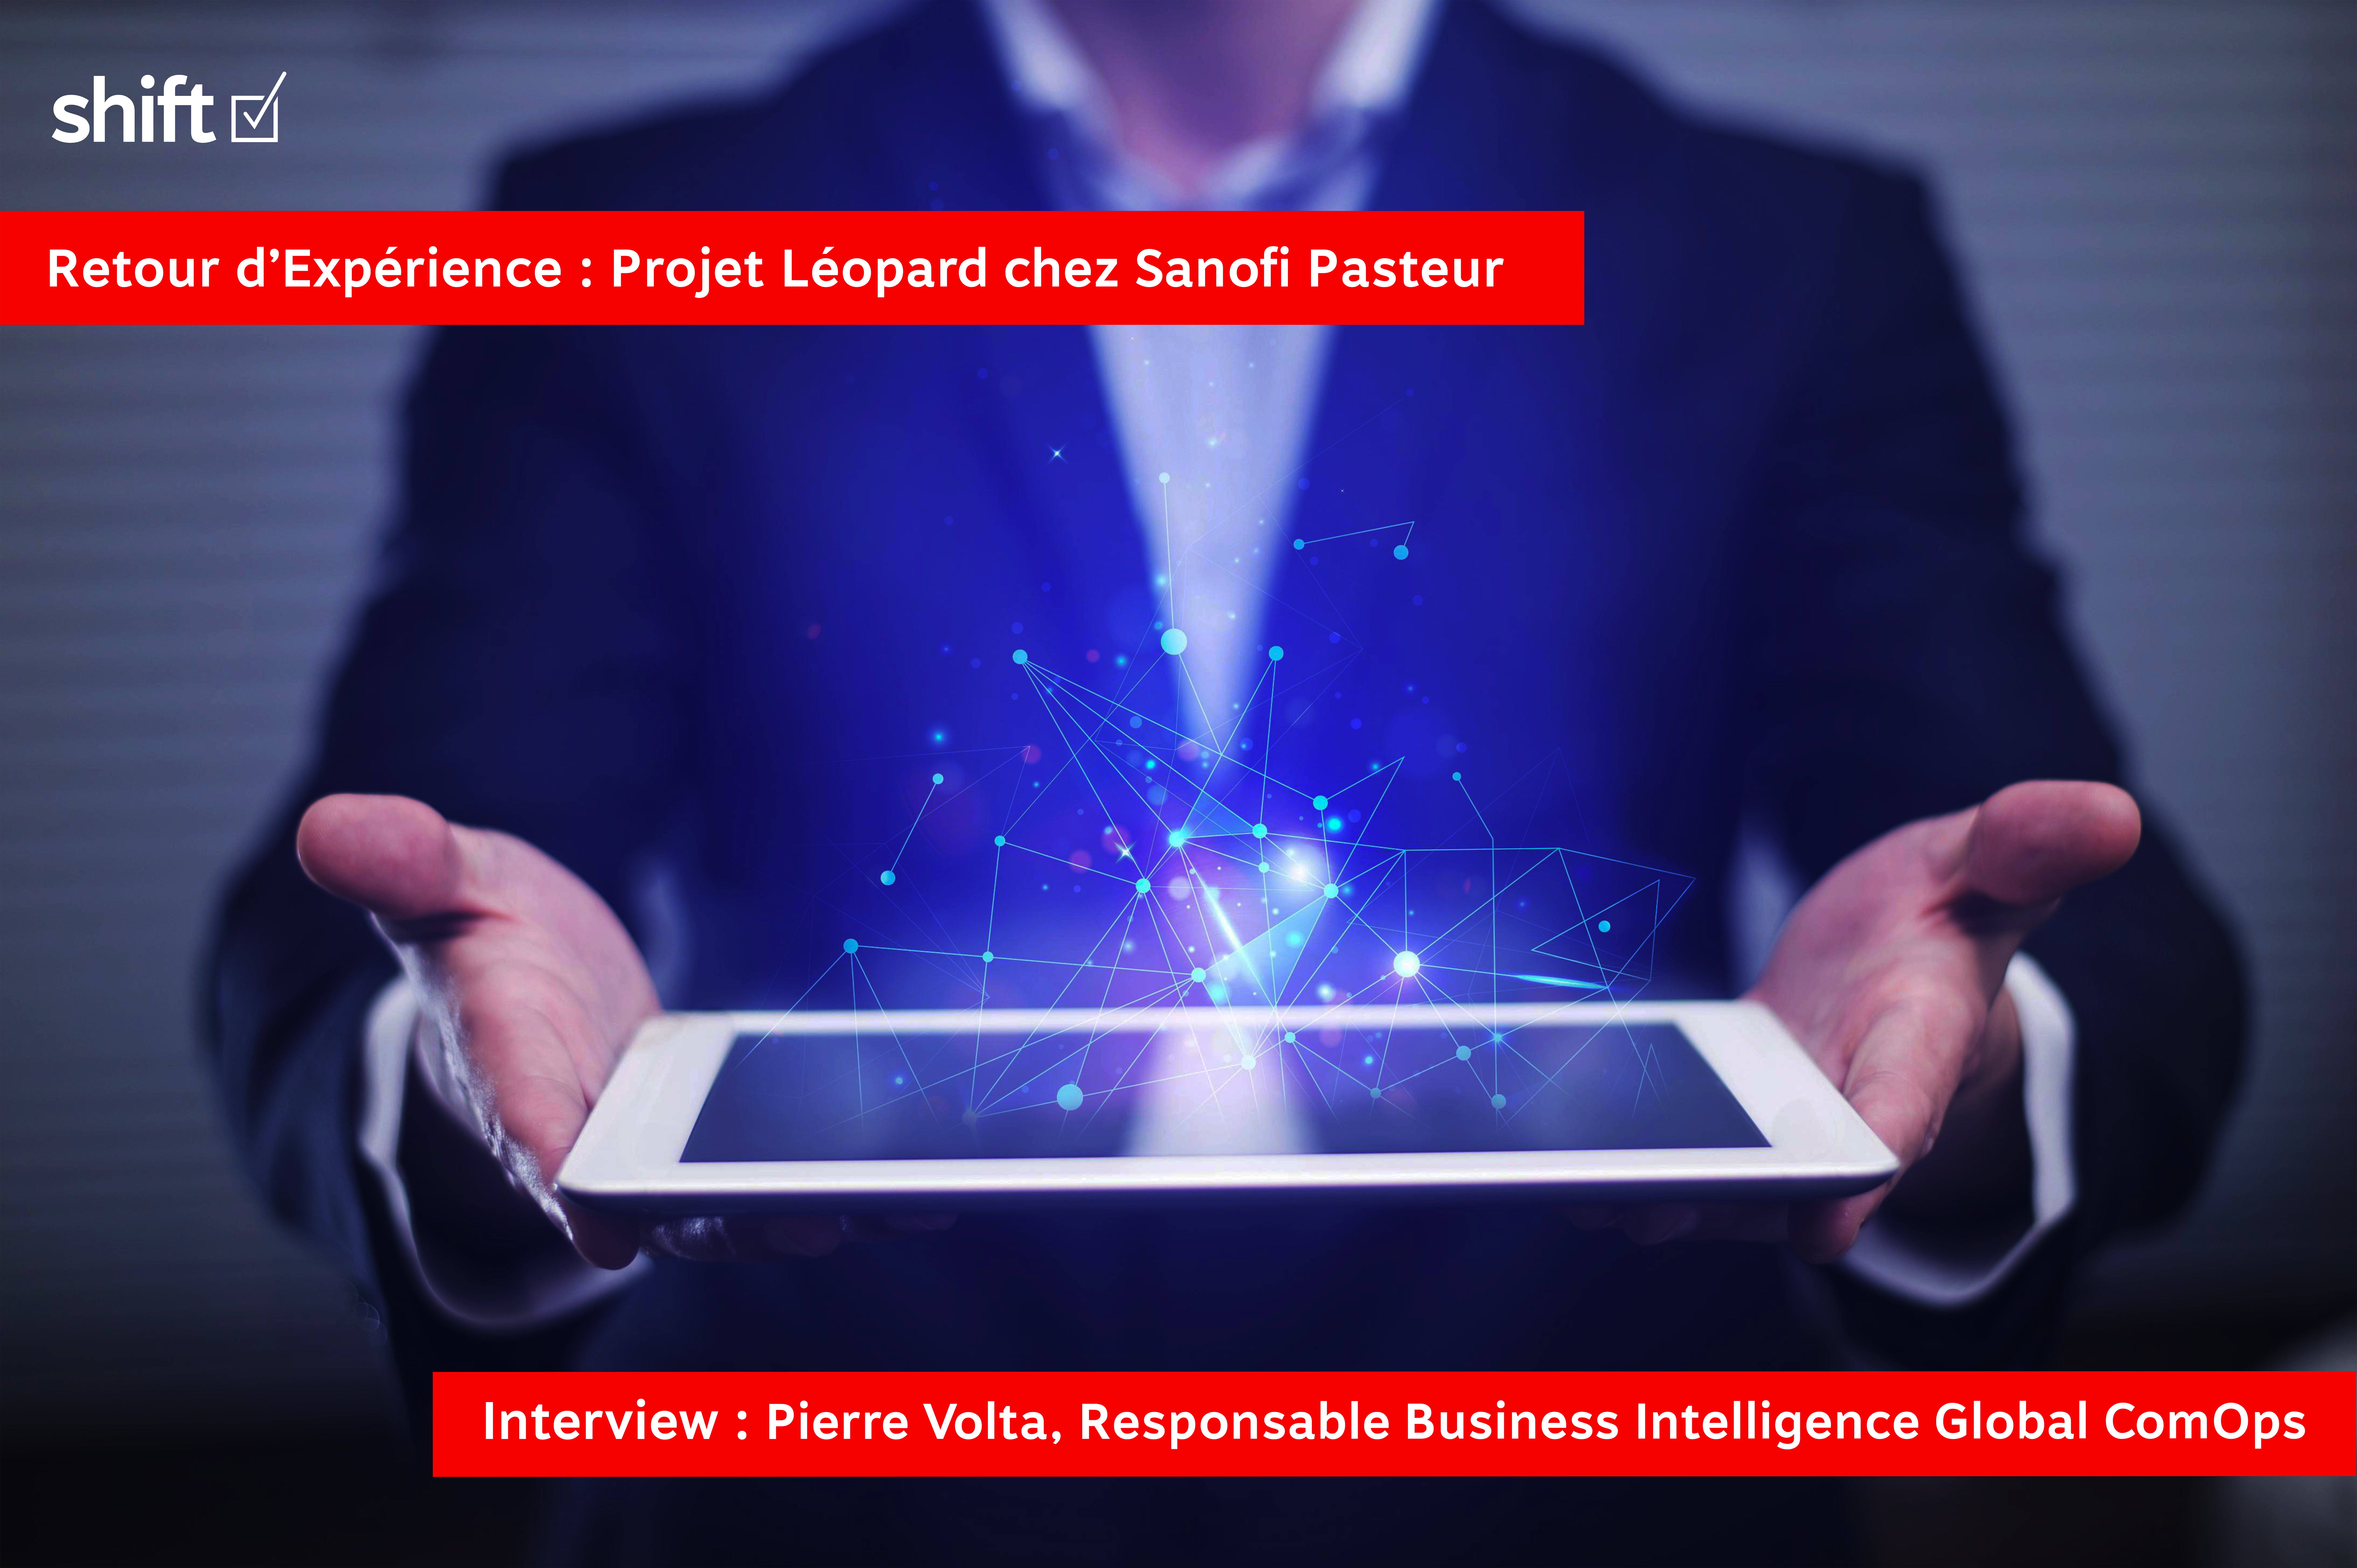 Interview / Retour d’Expérience / Projet Léopard chez Sanofi Pasteur